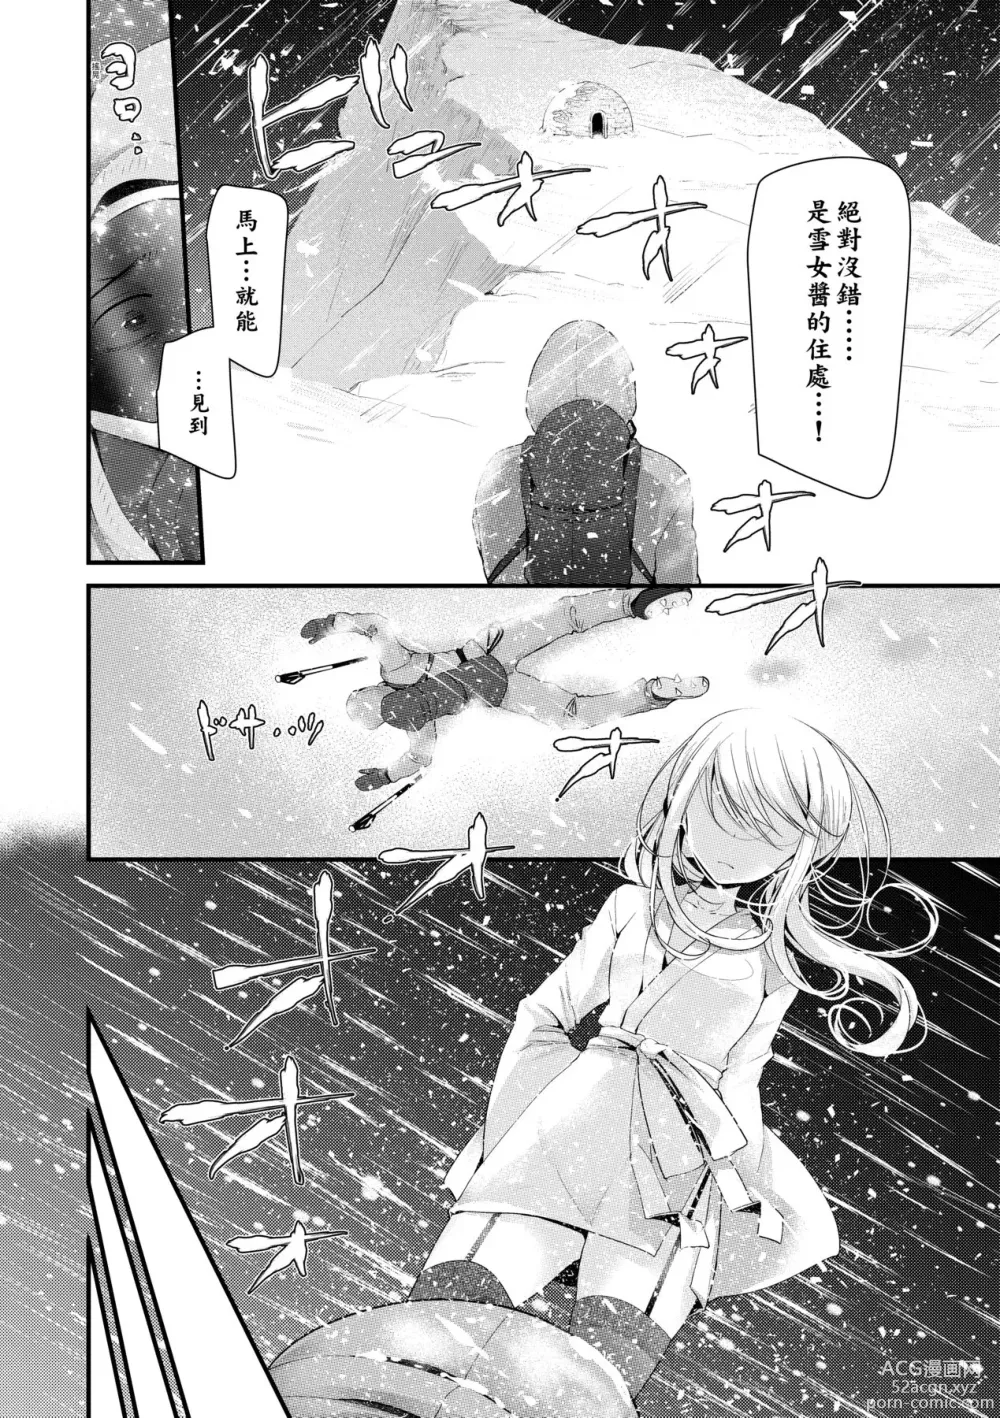 Page 7 of manga 年上的少女你也很喜歡吧?